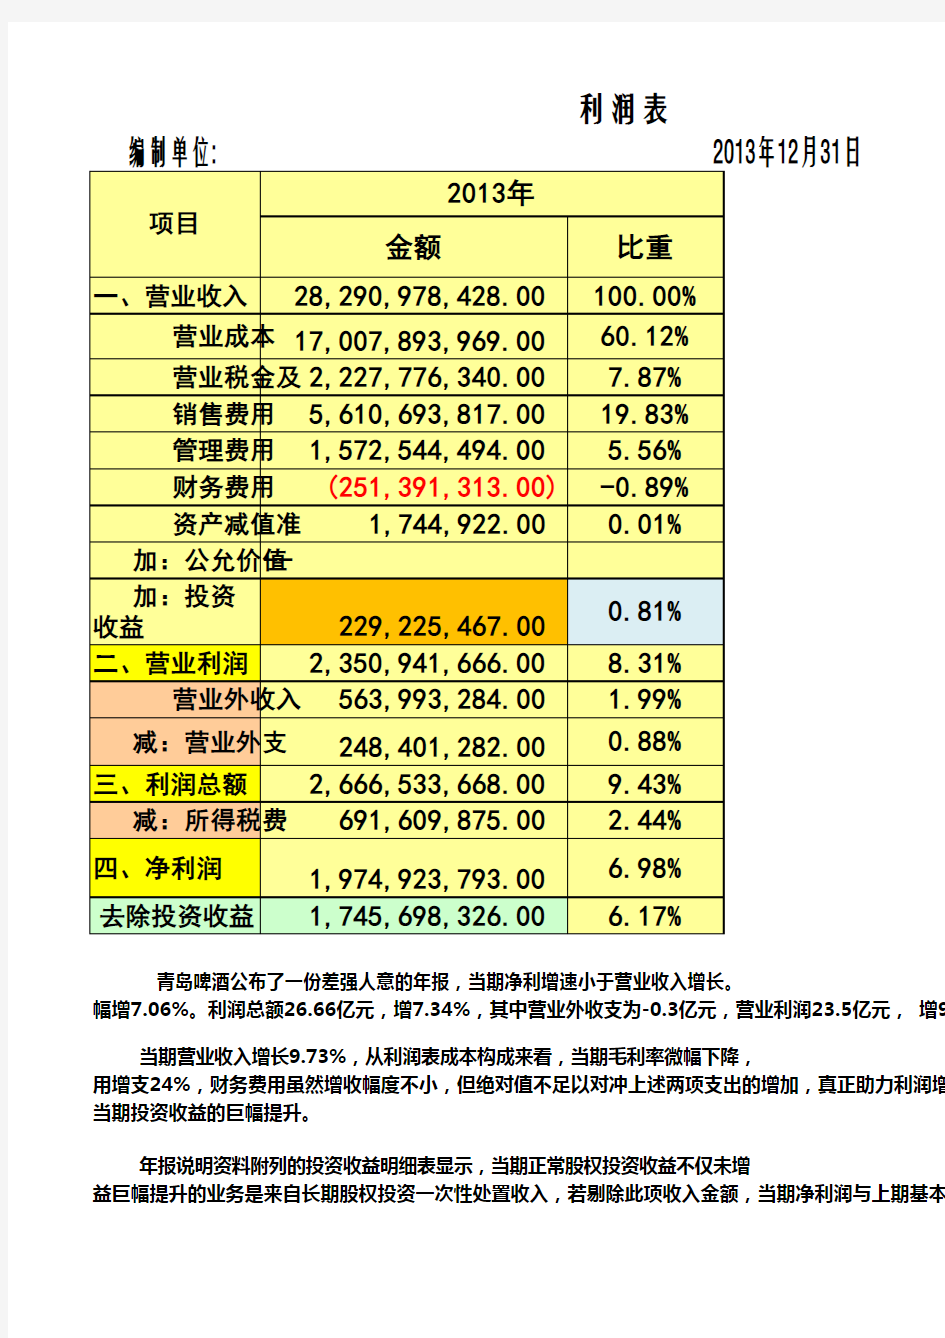 11-青岛啤酒(600600)2013年利润表分析(上课)